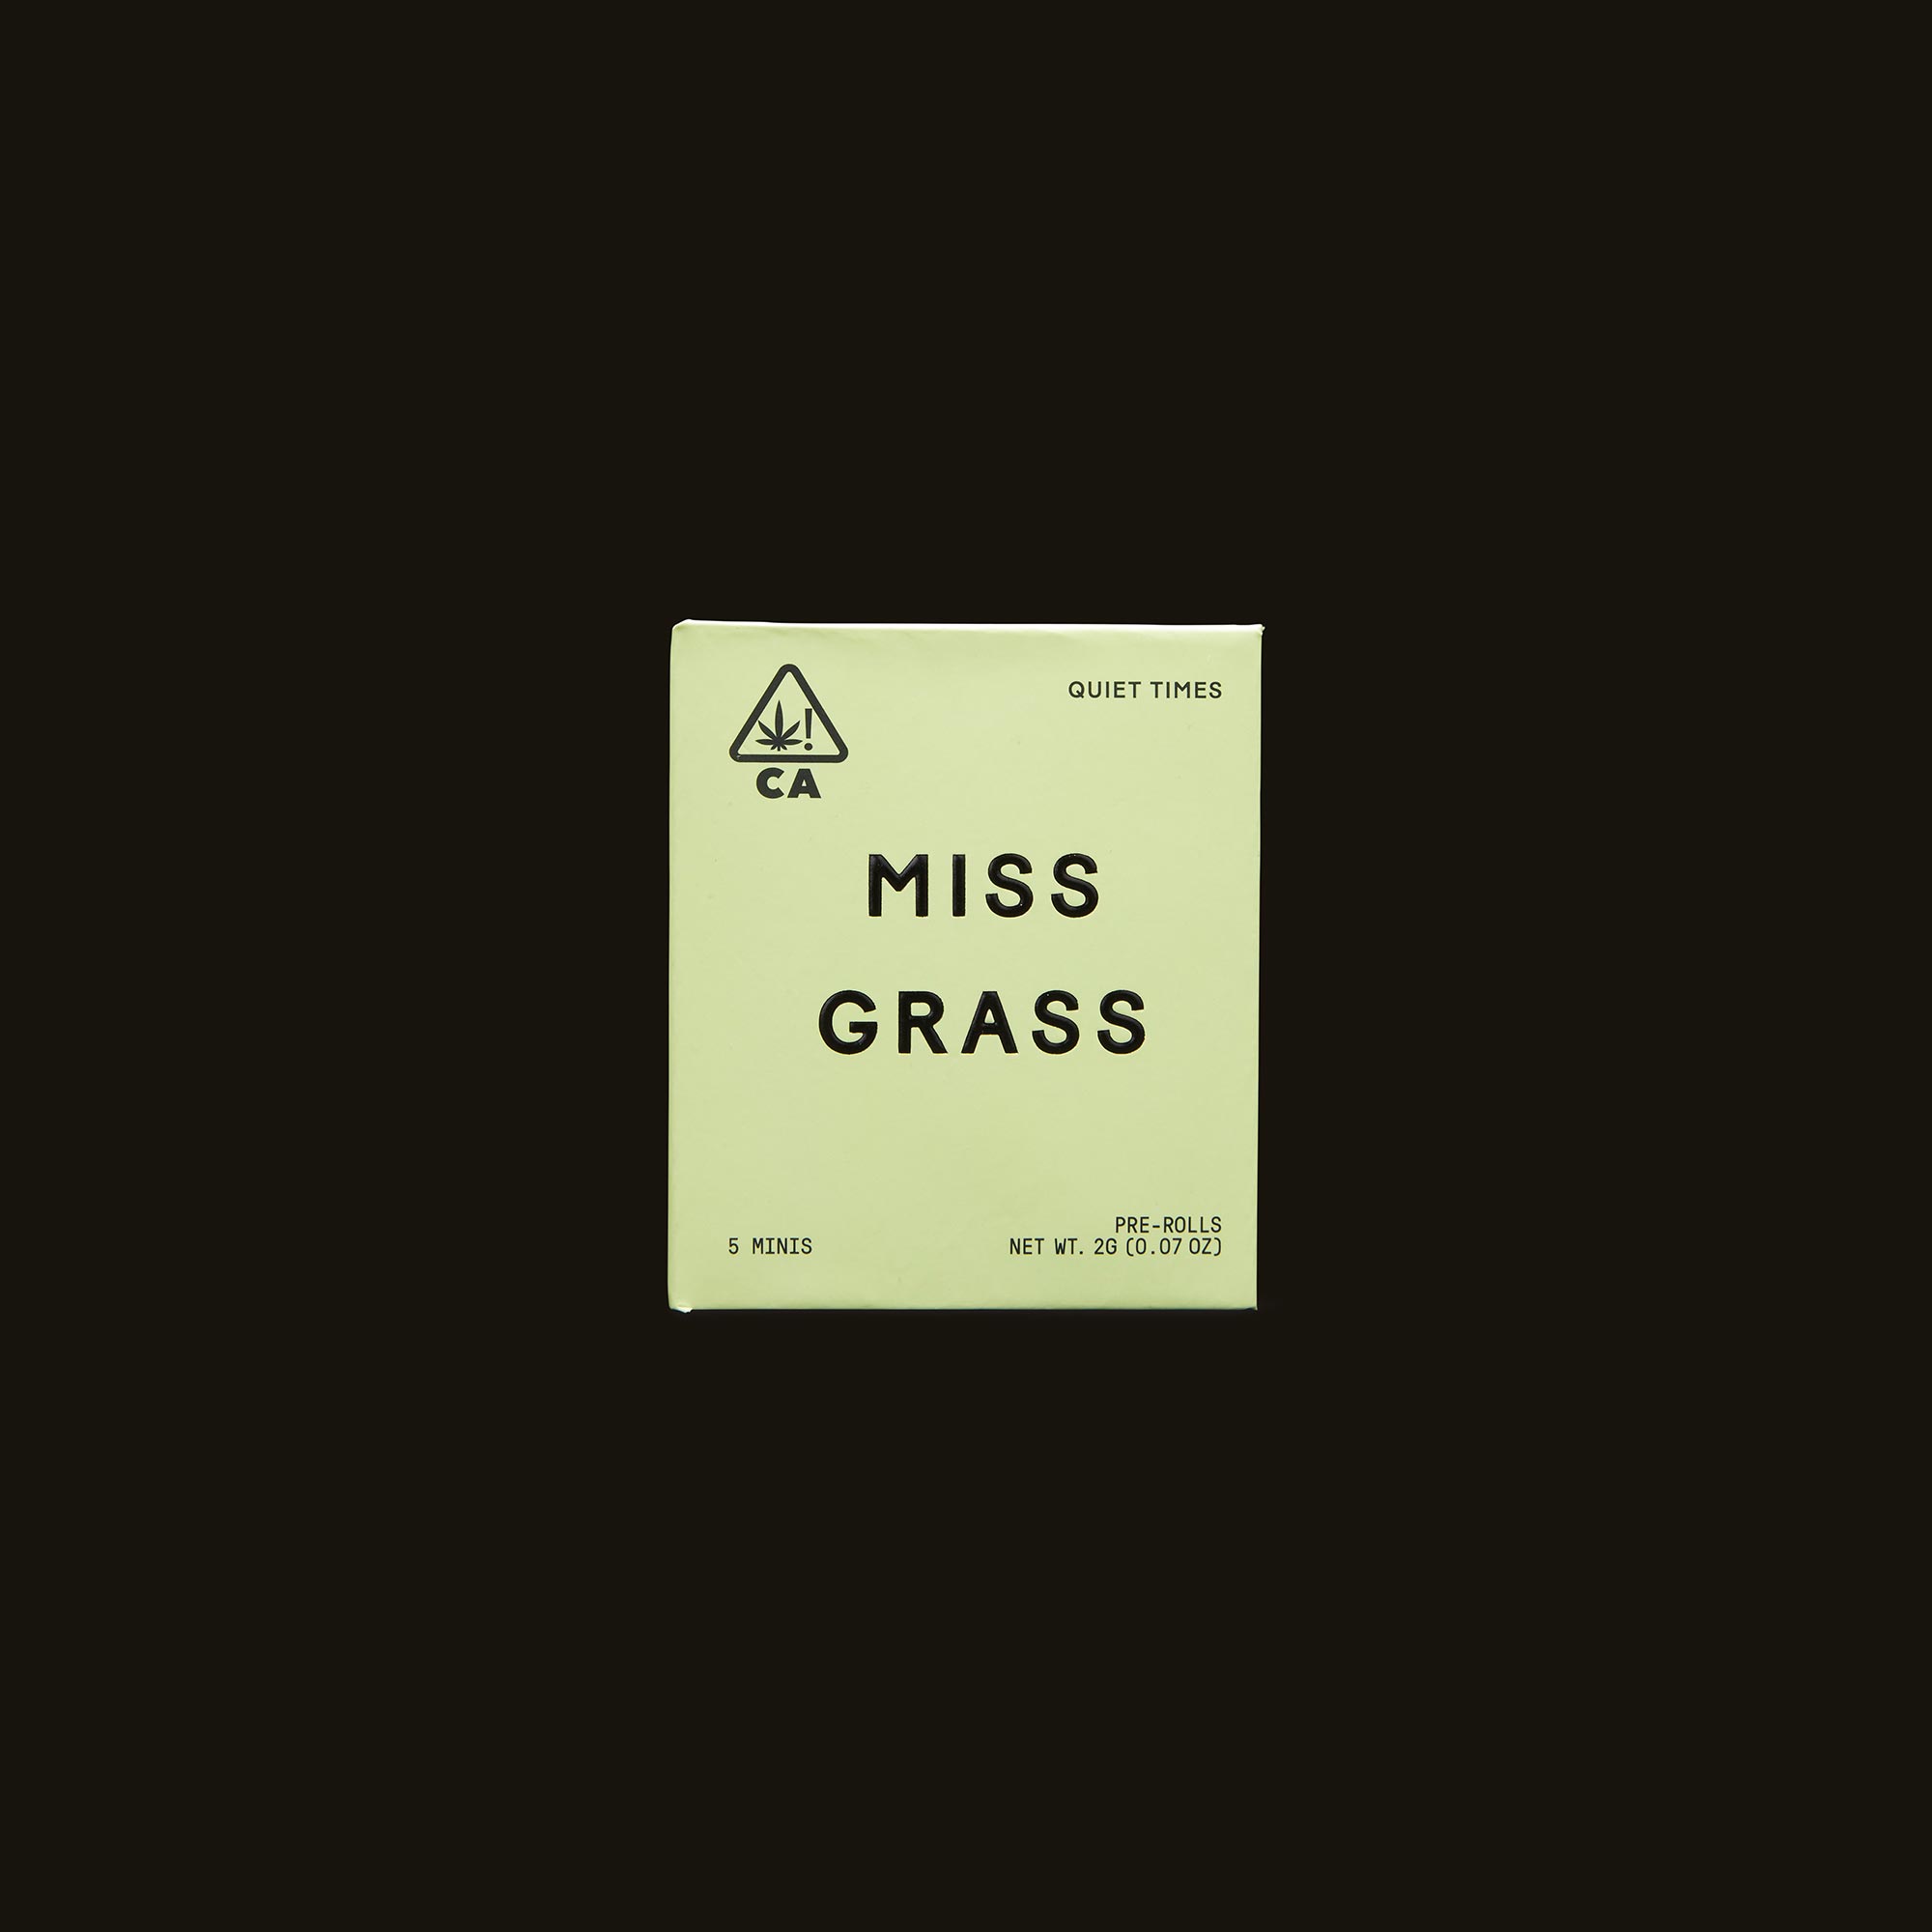 Miss-Grass-Miss-Grass-Minis-Quiet-Times0175-1-1105545